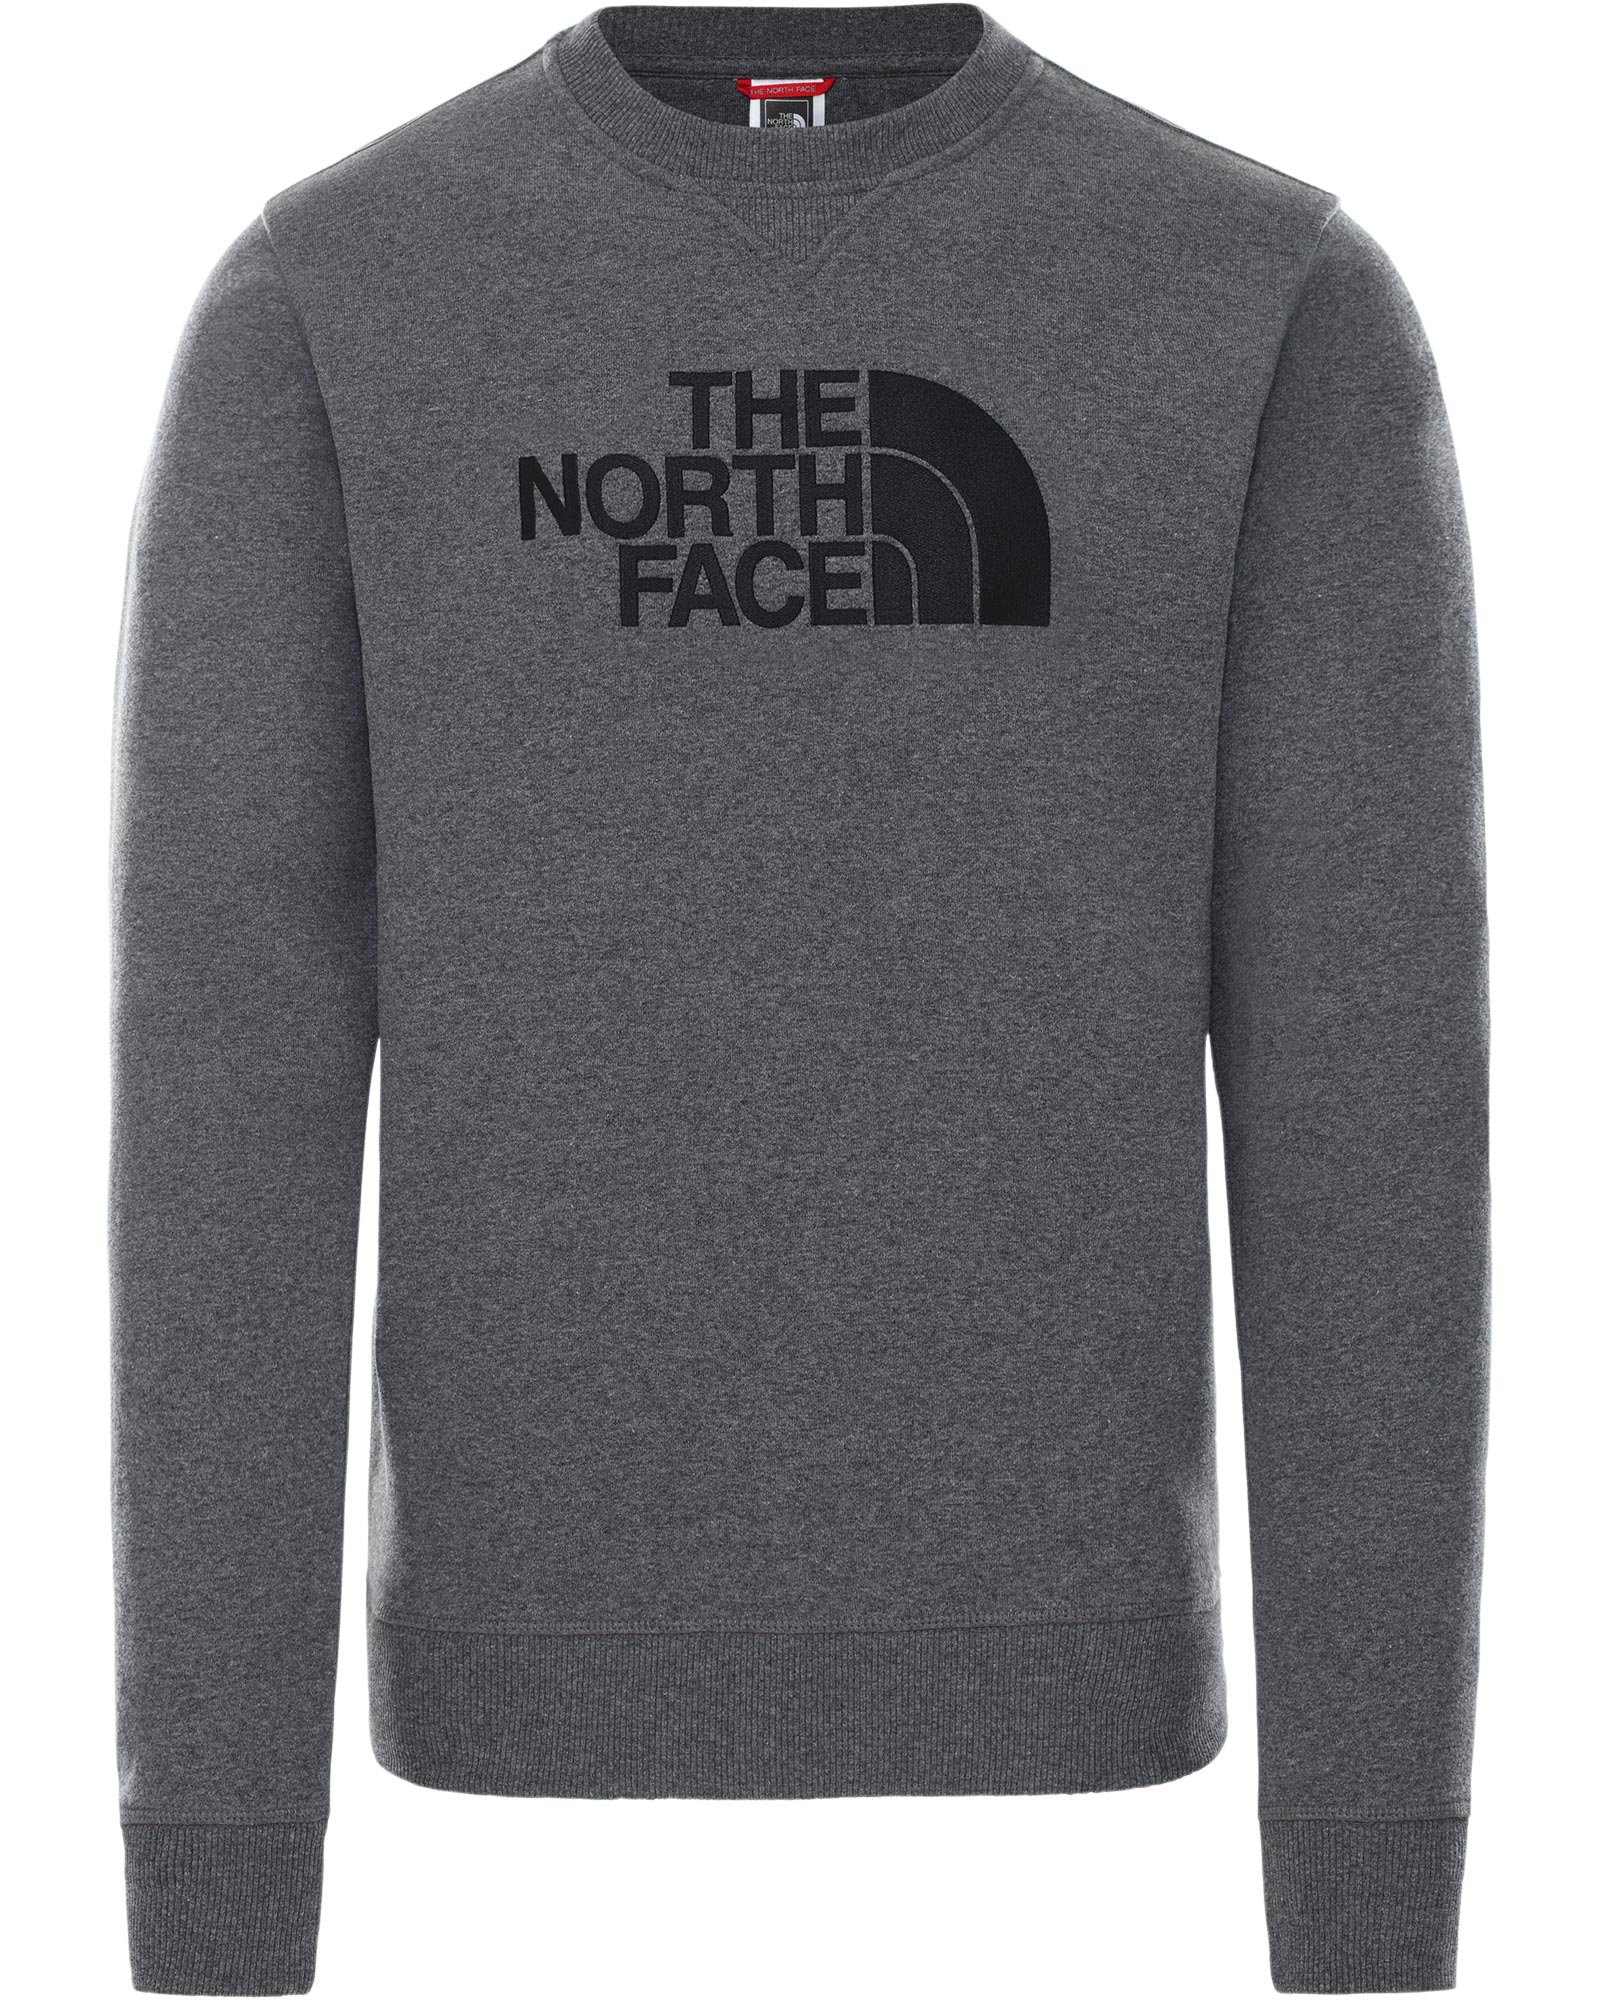 The North Face Drew Peak Men’s Crew - TNF Medium Grey Heather L